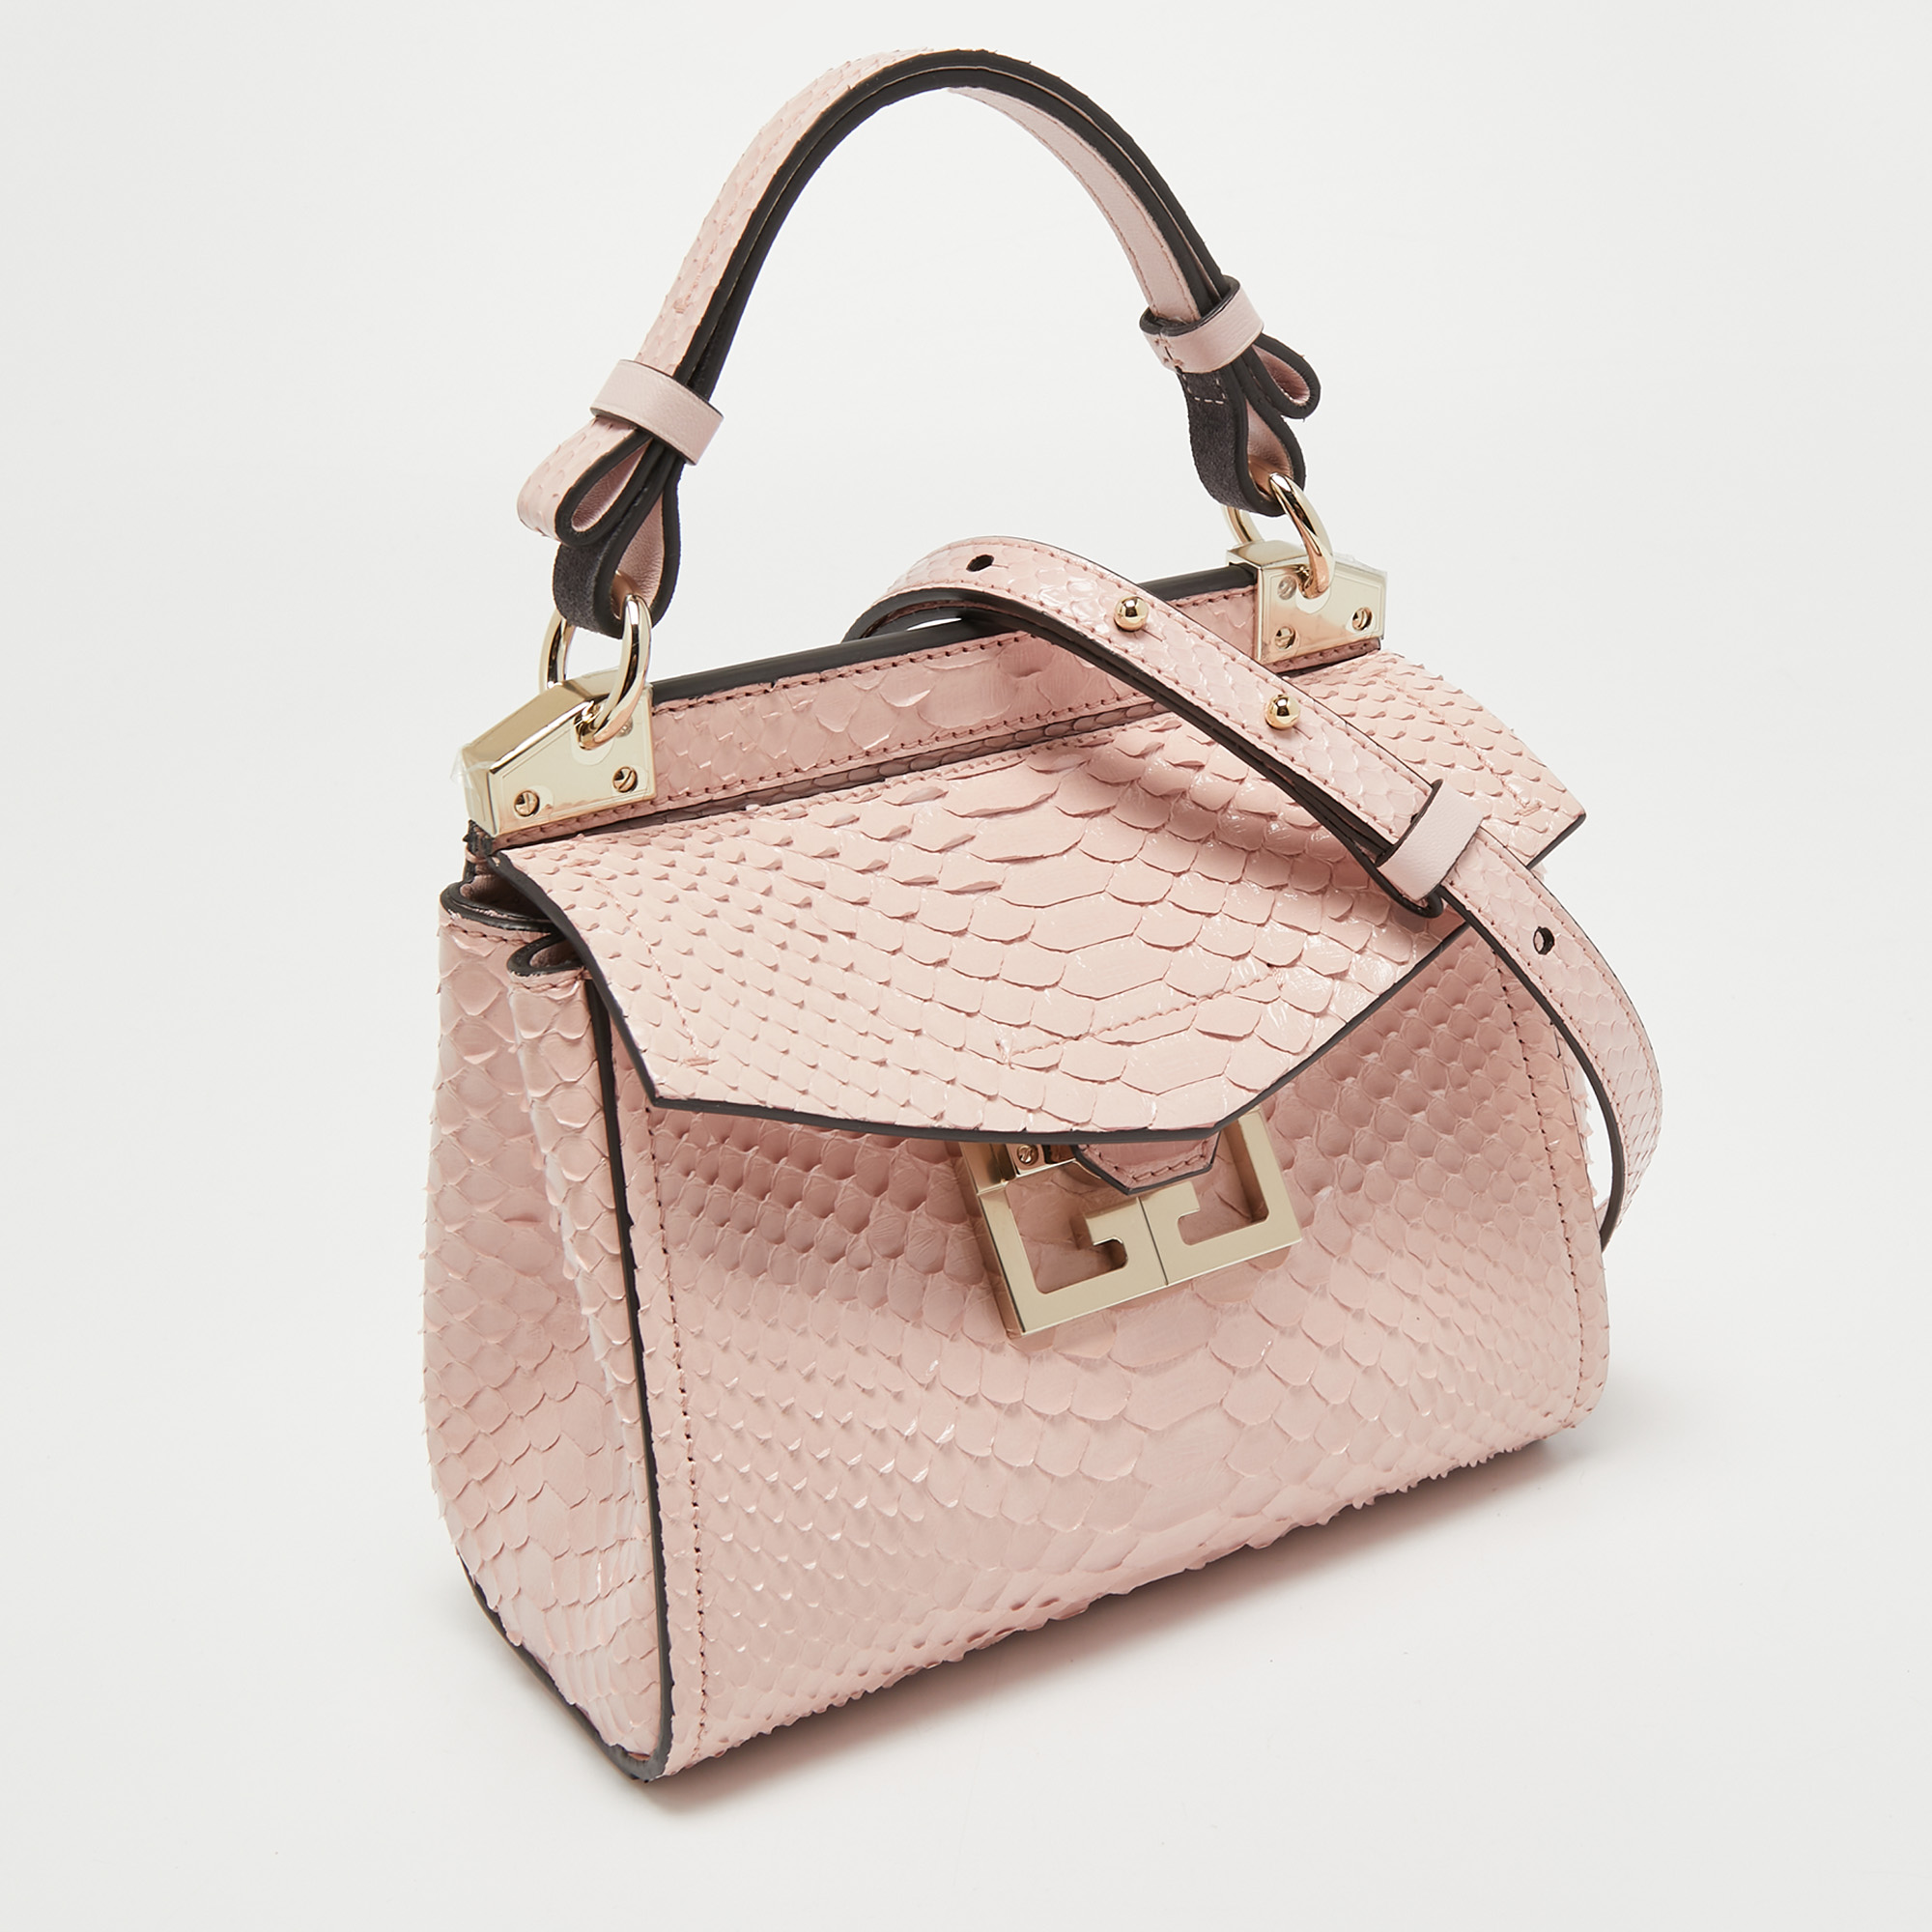 Givenchy Pink Python Mini Mystic Top Handle Bag